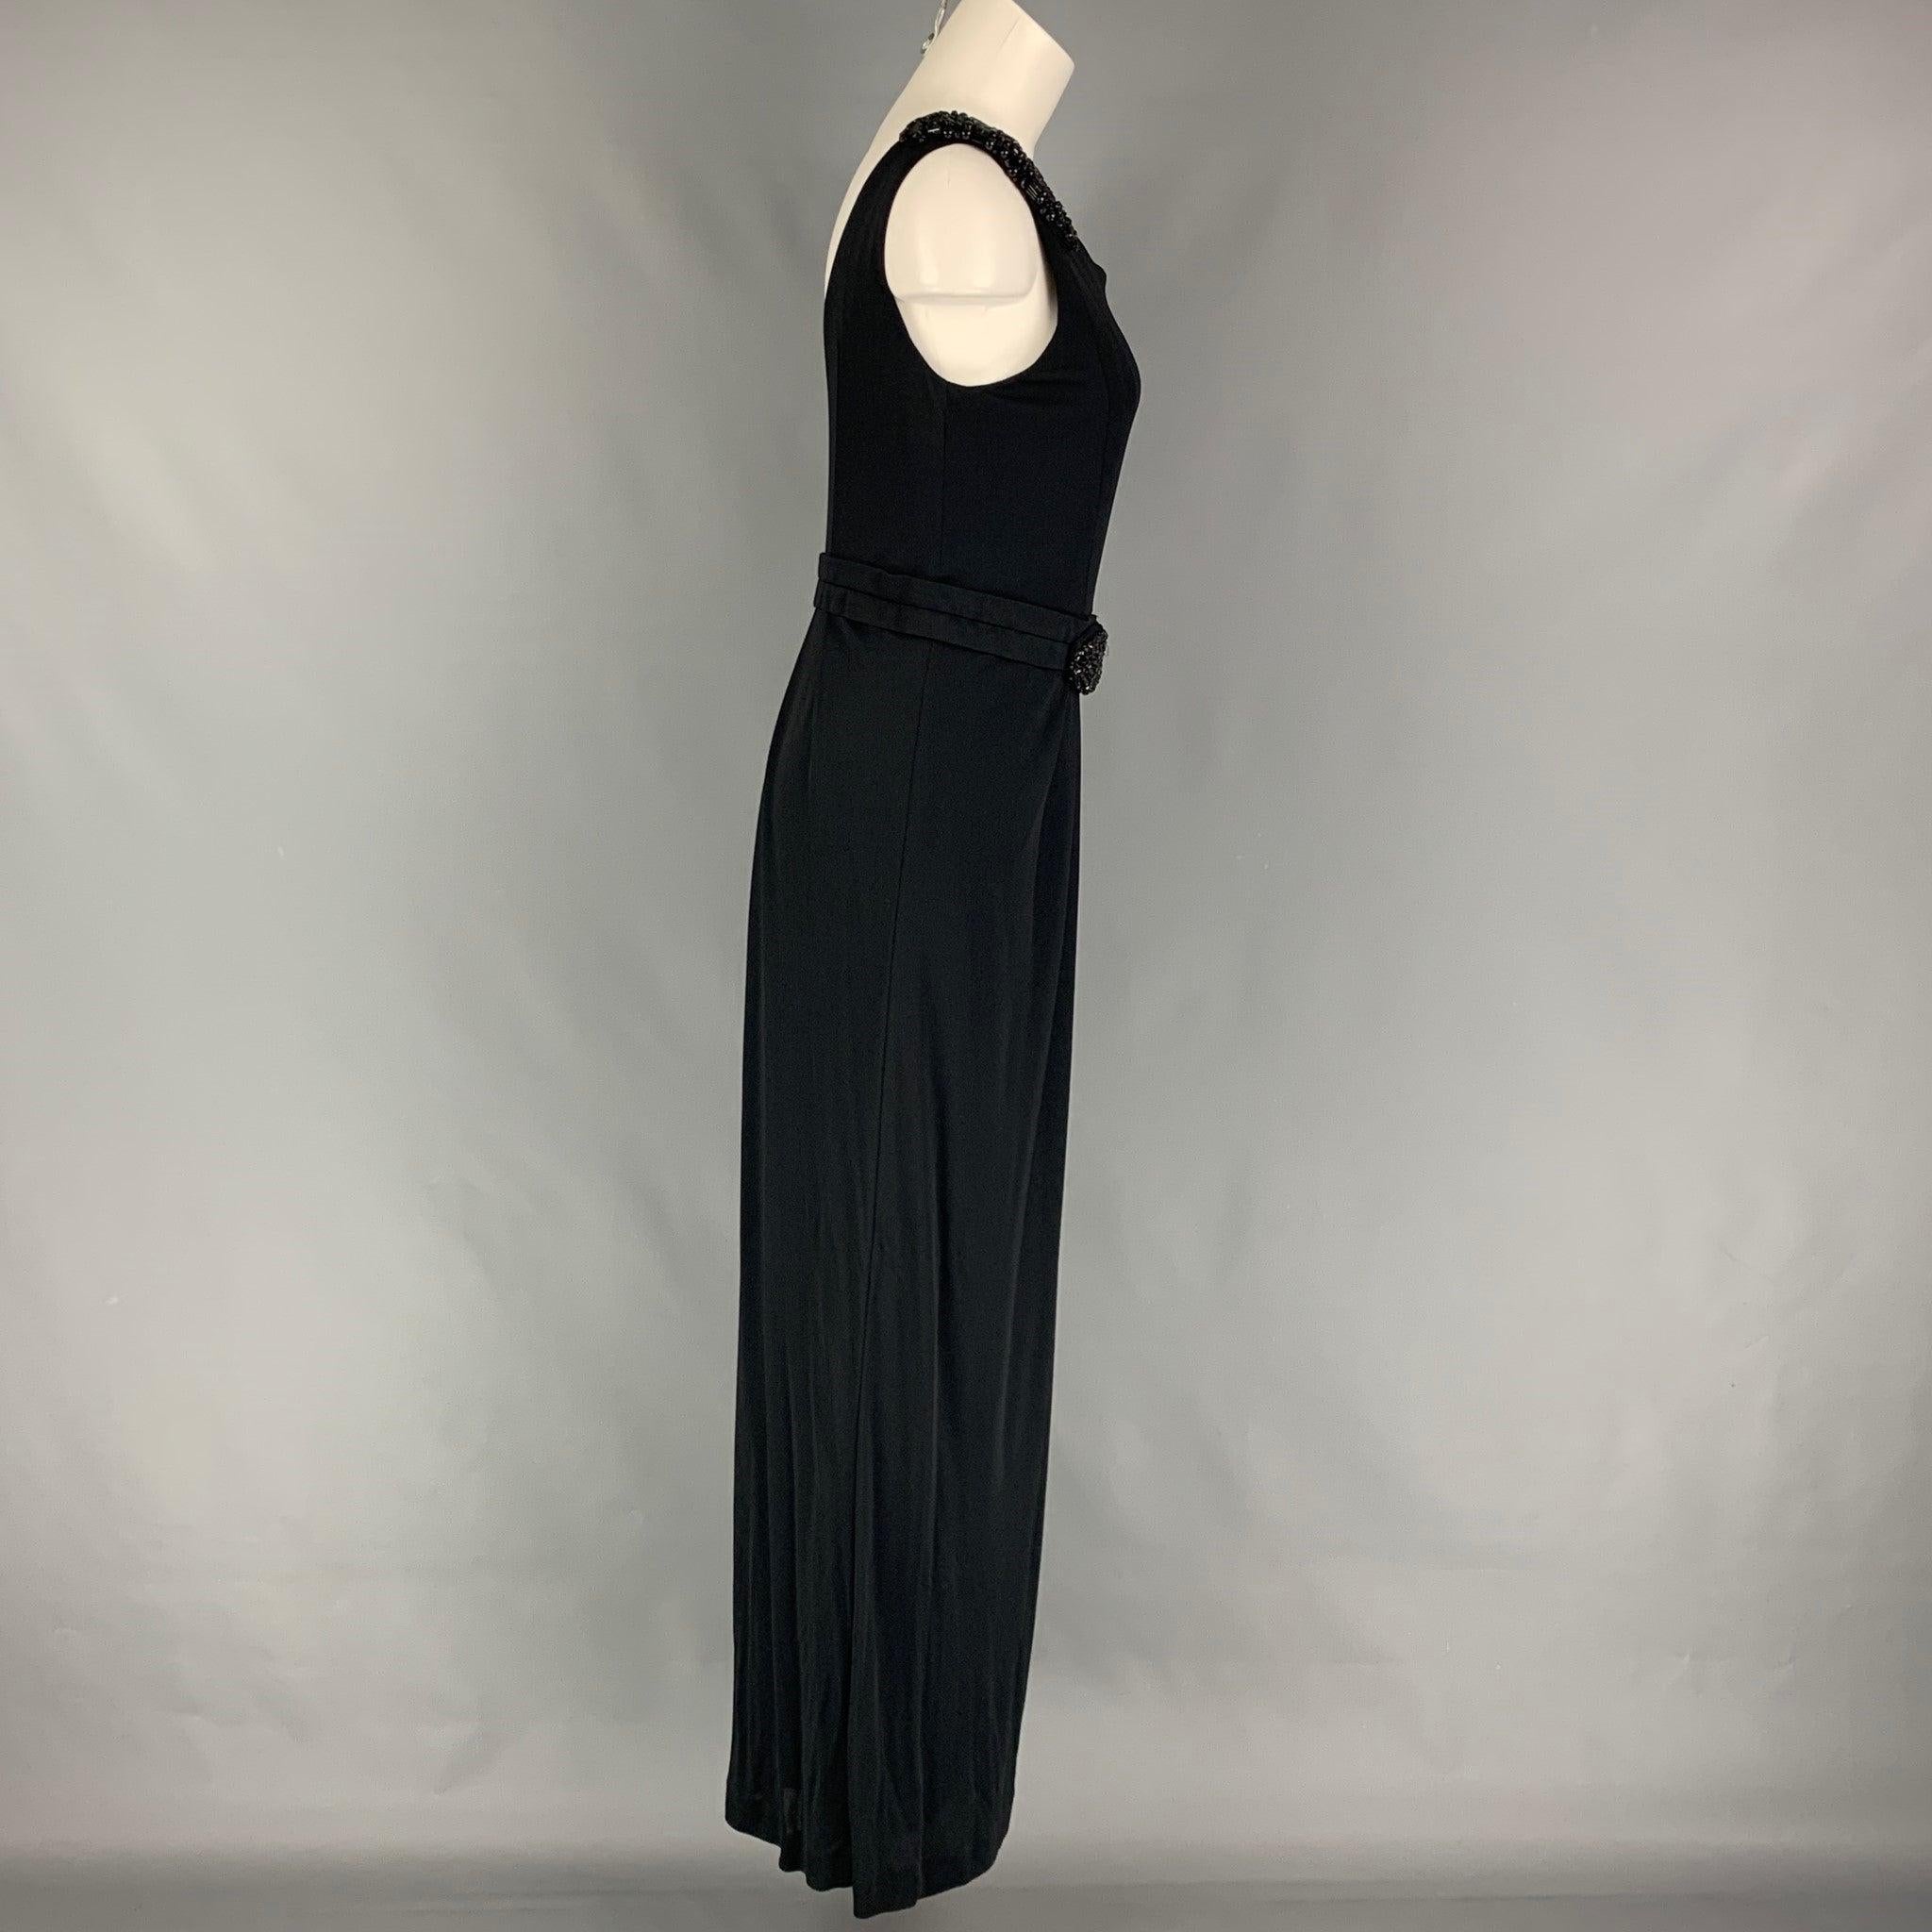 Das lange Kleid von LA PERLA aus schwarzer Viskose/Nylon hat einen ärmellosen Schnitt, ist mit Perlen verziert und wird mit einem seitlichen Reißverschluss geschlossen.
Sehr gut
Gebrauchtes Zustand. 

Markiert:   44 

Abmessungen: 
  Oberweite: 30